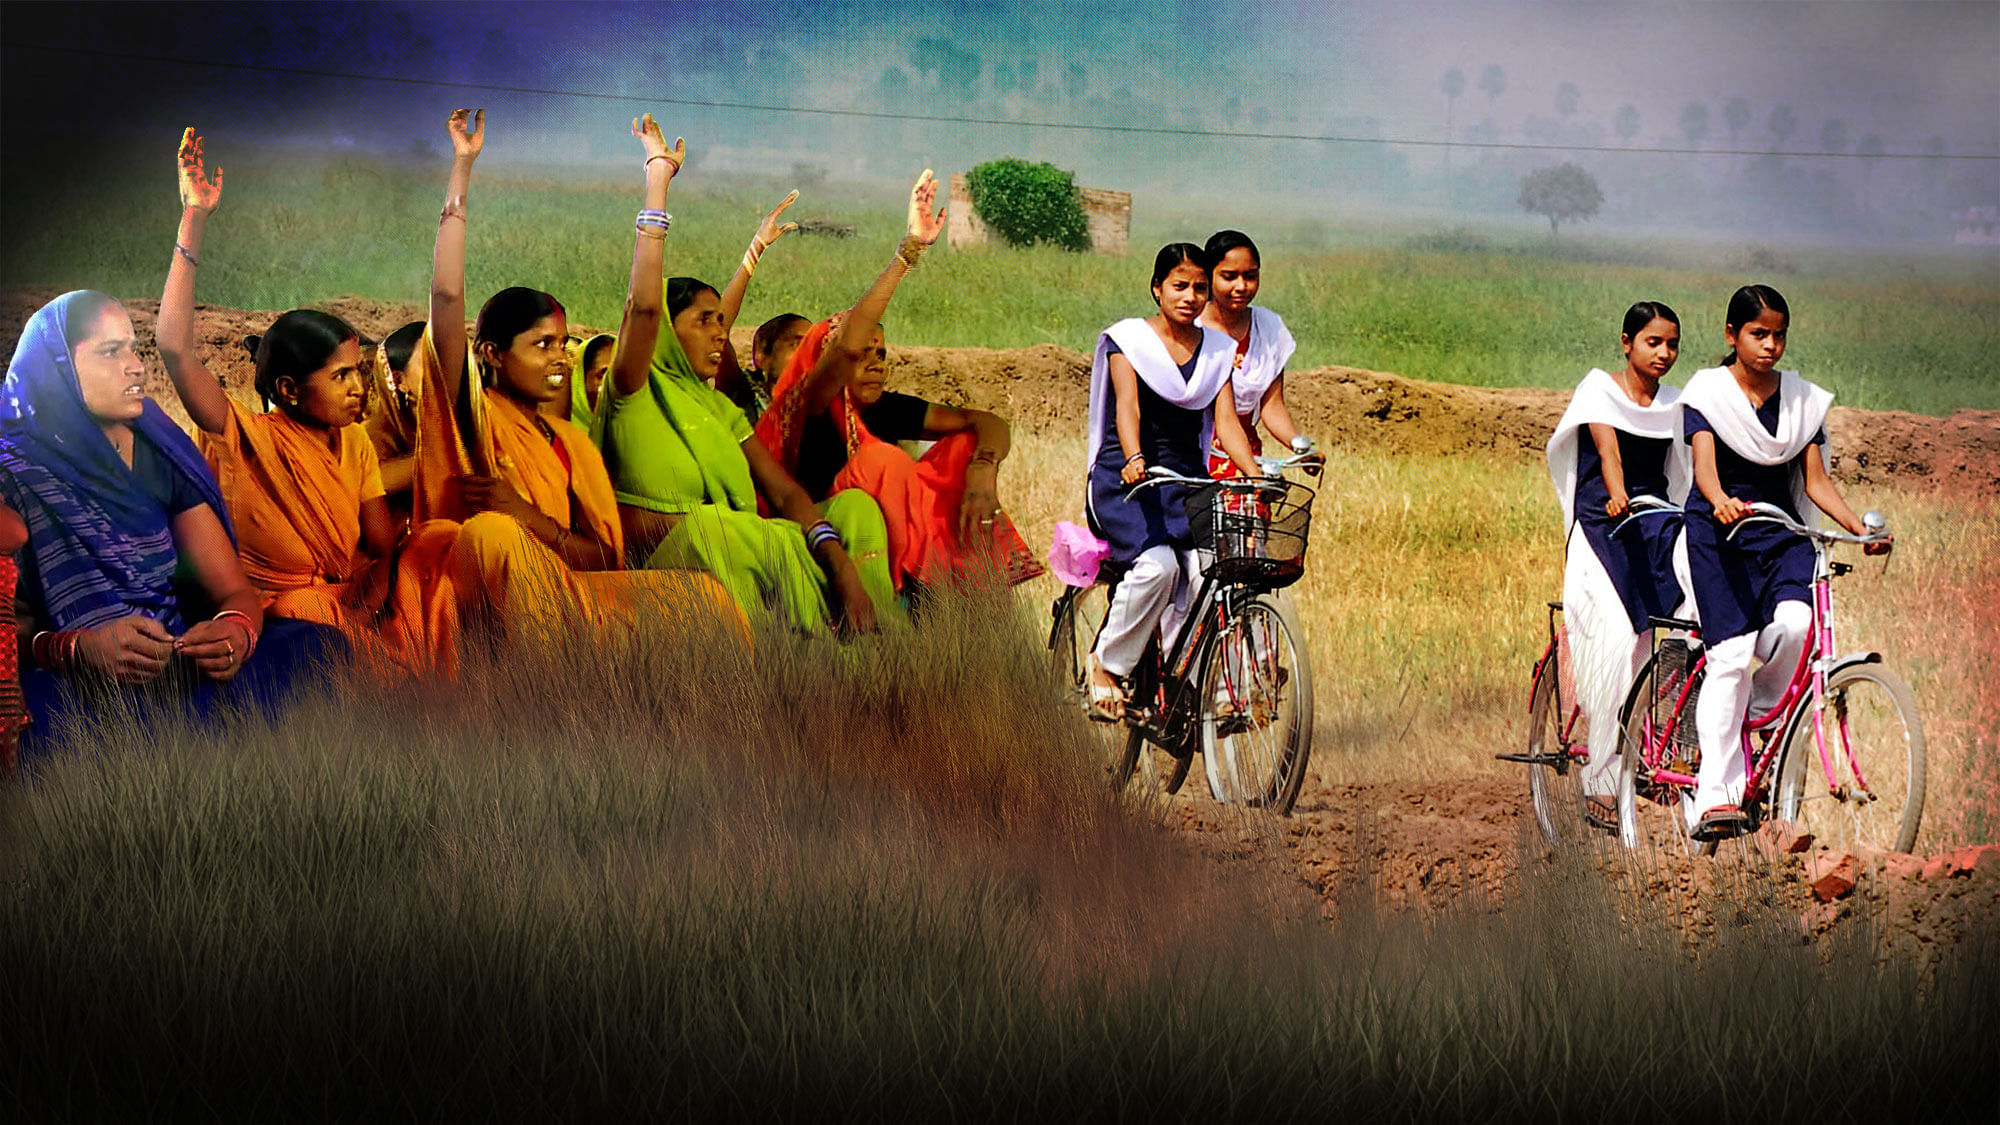 पंचायतों में अधिक प्रतिनिधित्व के साथ उत्तर प्रदेश और बिहार जैसे राज्यों में आहिस्ते से हो रहे सामाजिक बदलाव में महिलाओं की अहम भूमिका है. (फोटोः द क्विंट)